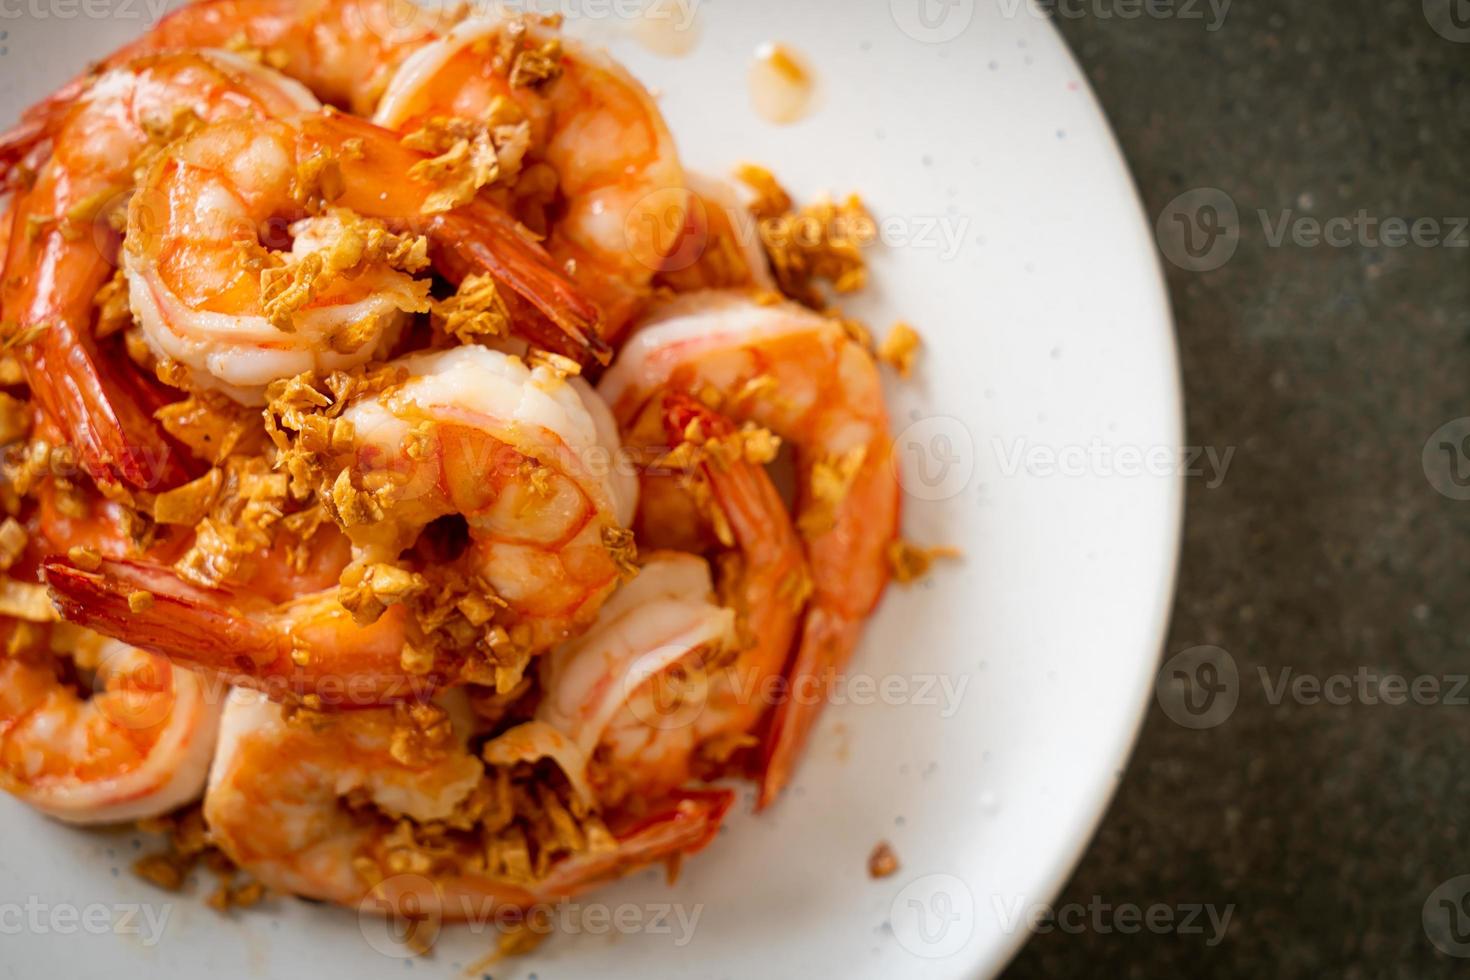 crevettes ou crevettes frites à l'ail sur une assiette blanche - style fruits de mer photo